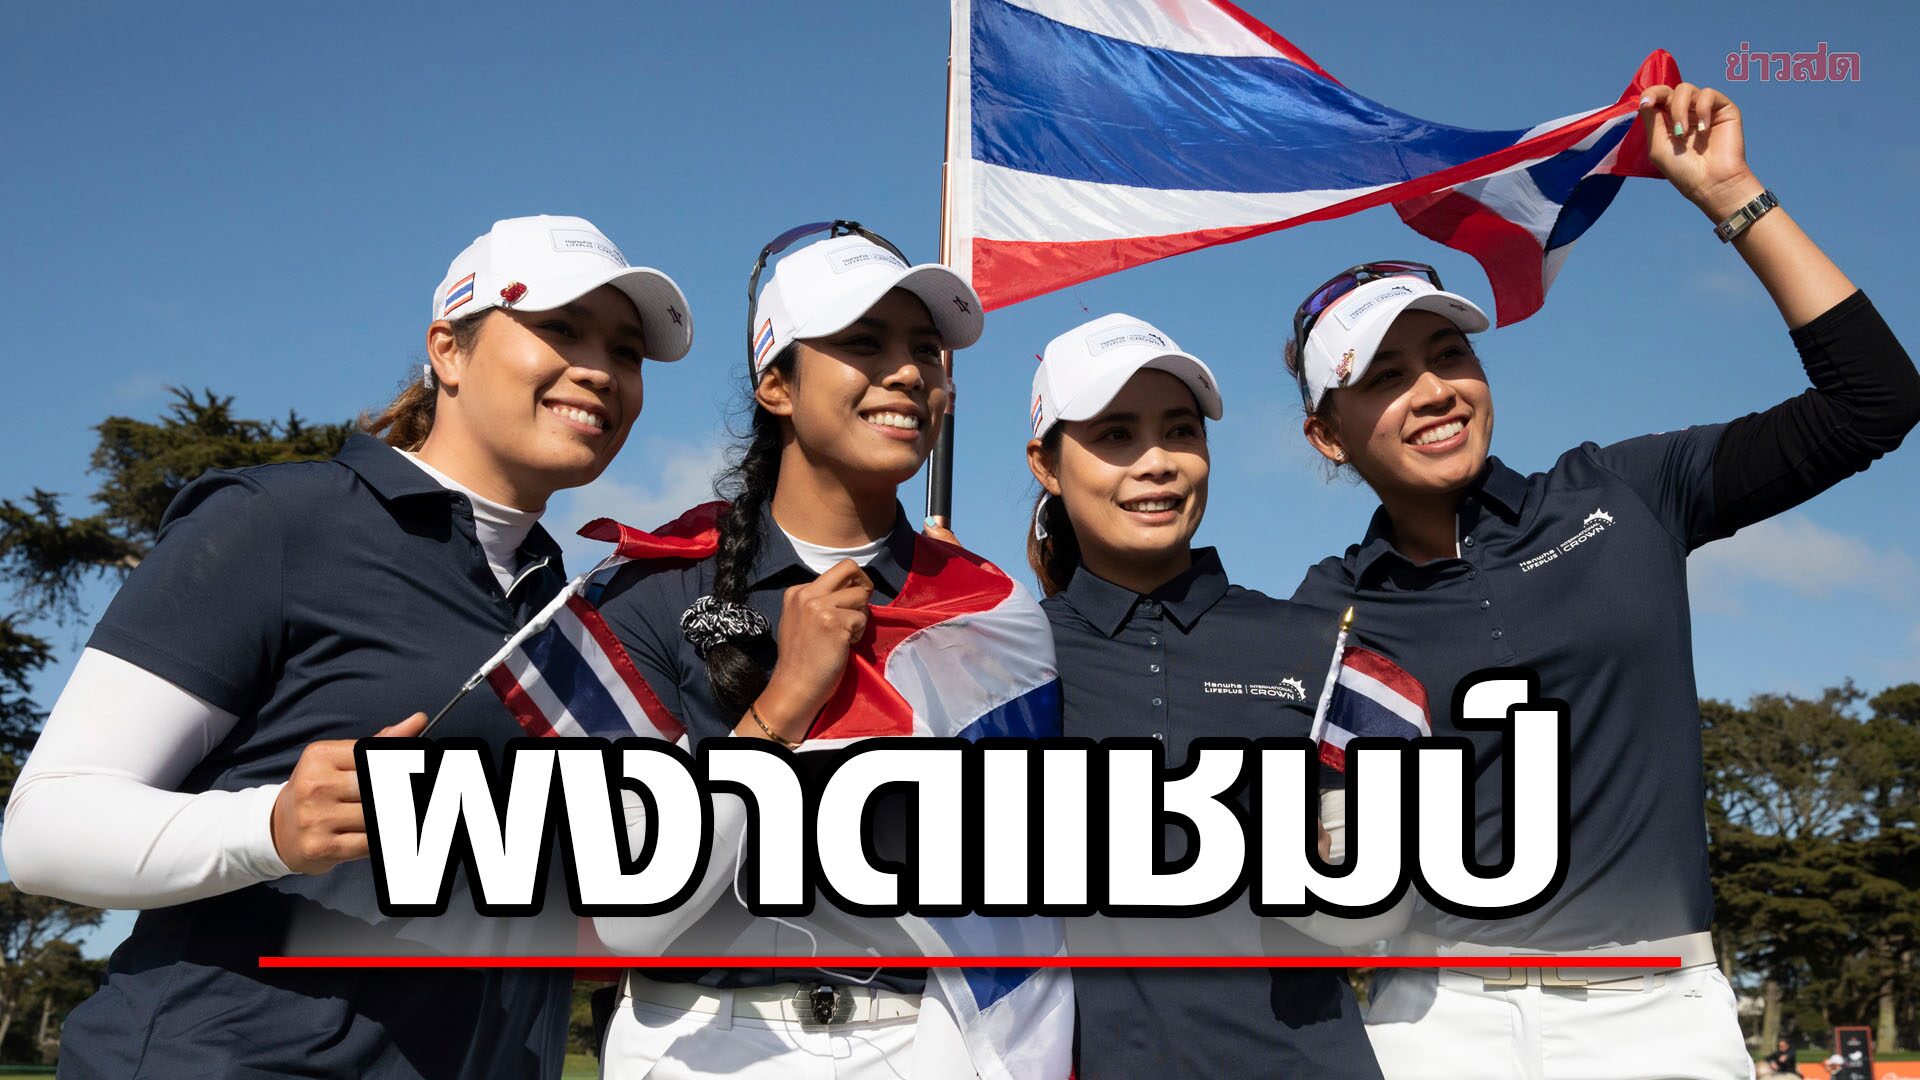 ทัพก้านเหล็กสาวไทย ผนึกกำลังคว้าแชมป์กอล์ฟทีมหญิง อินเตอร์เนชันแนล คราวน์